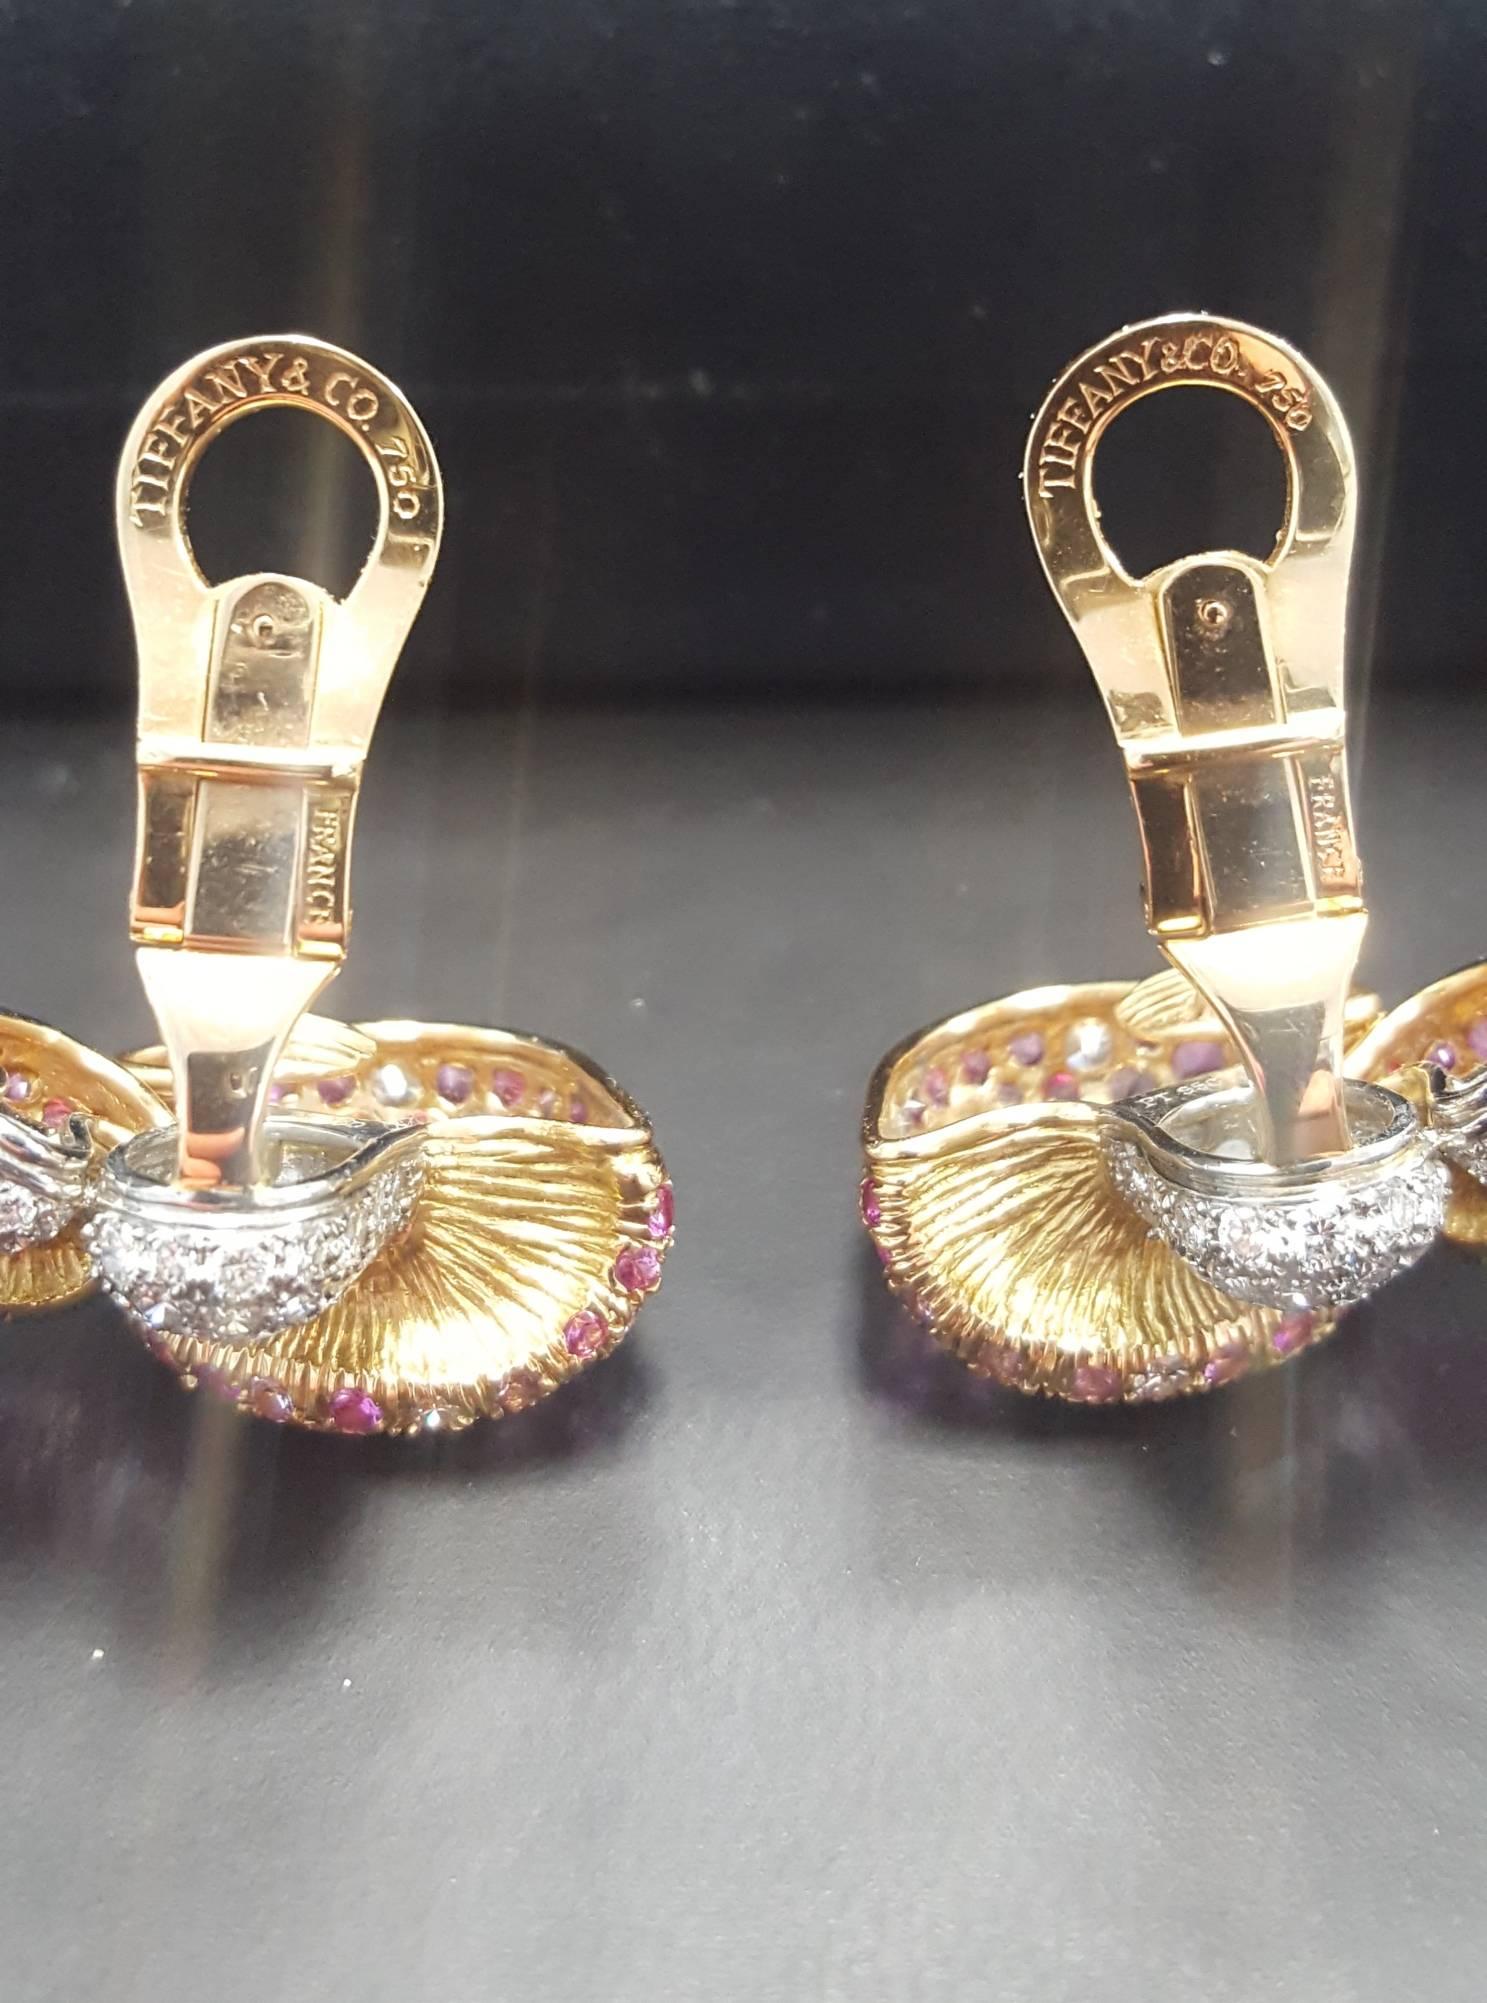 pink sapphire earrings tiffany